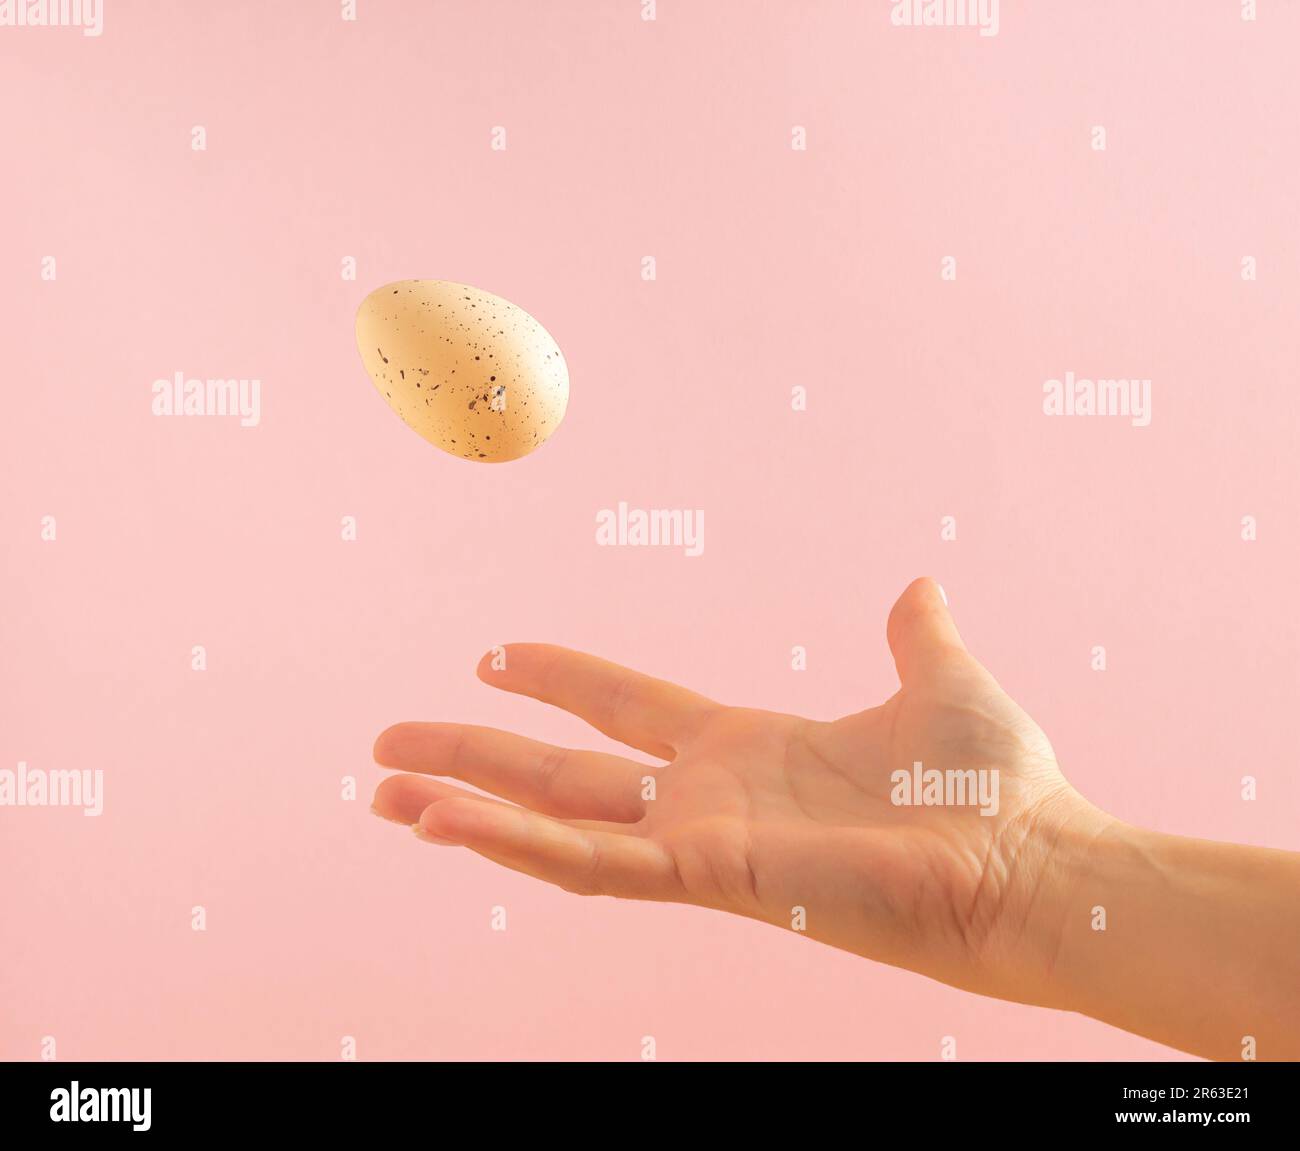 La main de la femme jette un œuf blanc sur fond rose pastel. Concept de Pâques minimal. Banque D'Images